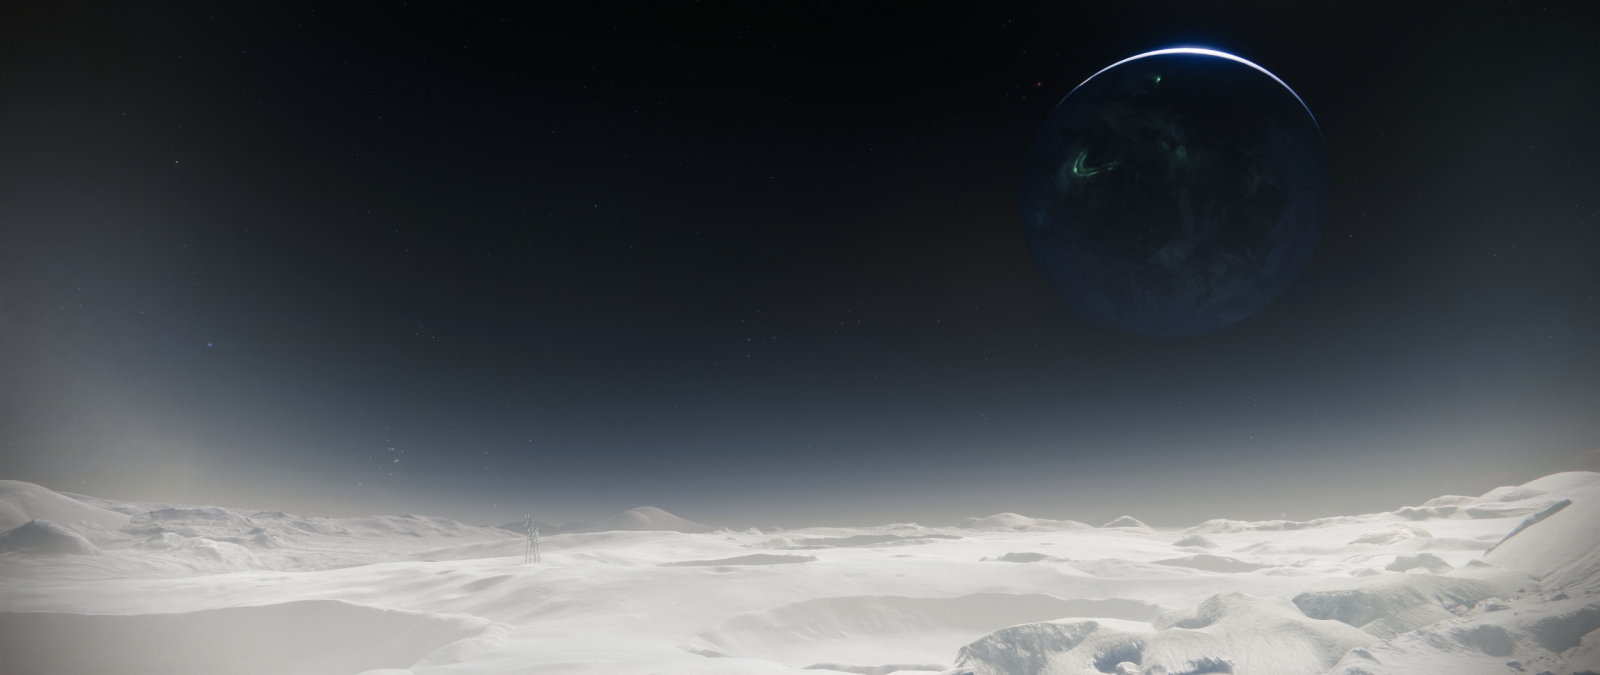 Destiny 2 Screenshot 2019.10.07 - 03.22.25.08.png